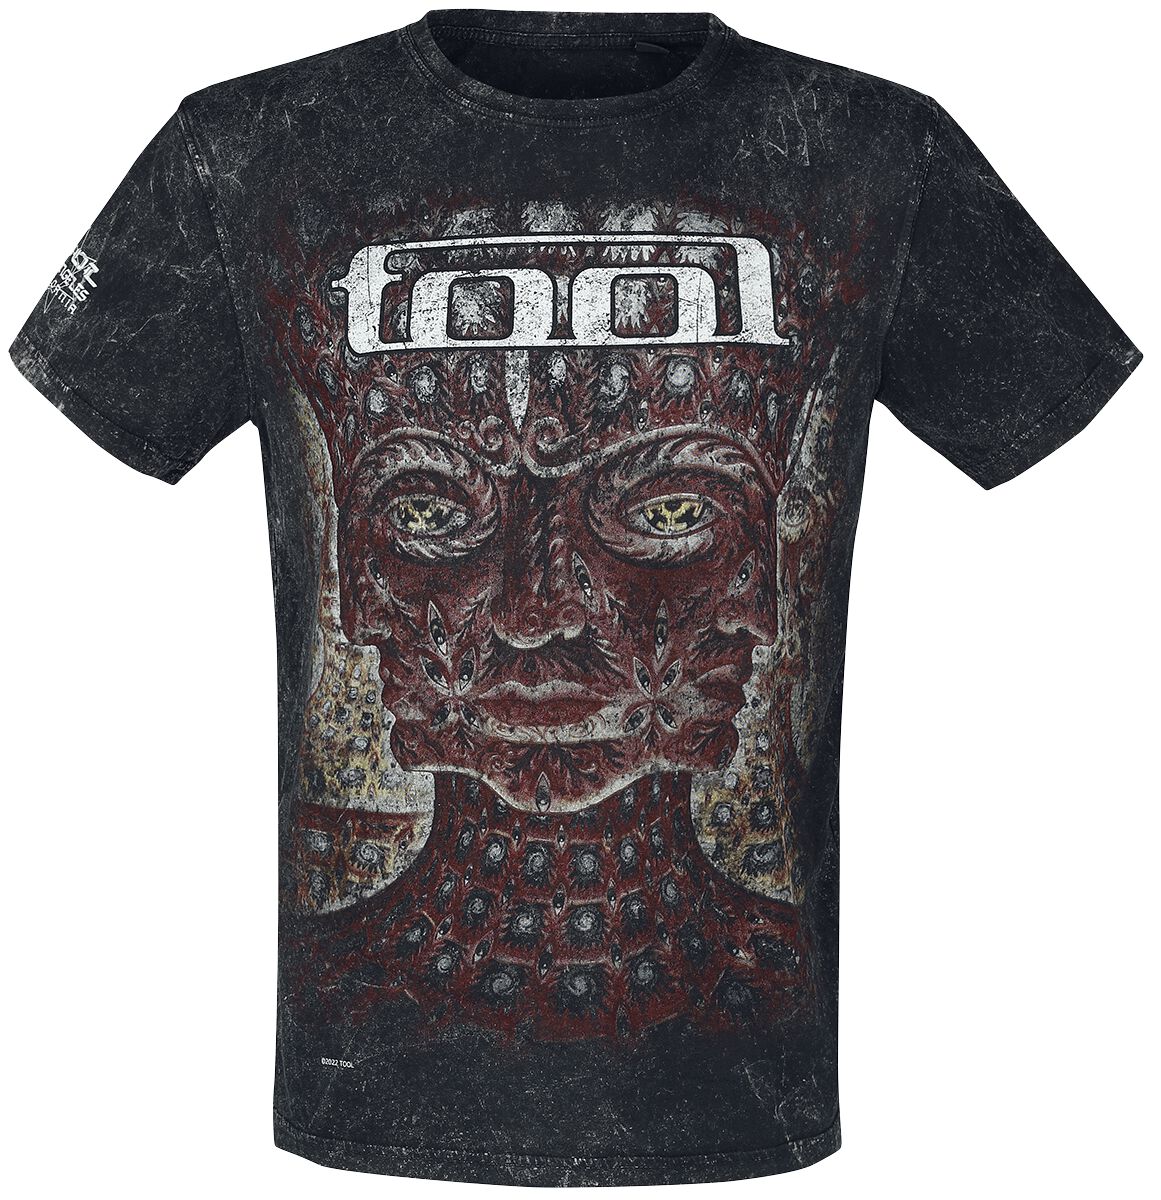 Tool T-Shirt - Lateralus - S bis 3XL - für Männer - Größe M - schwarz  - Lizenziertes Merchandise!